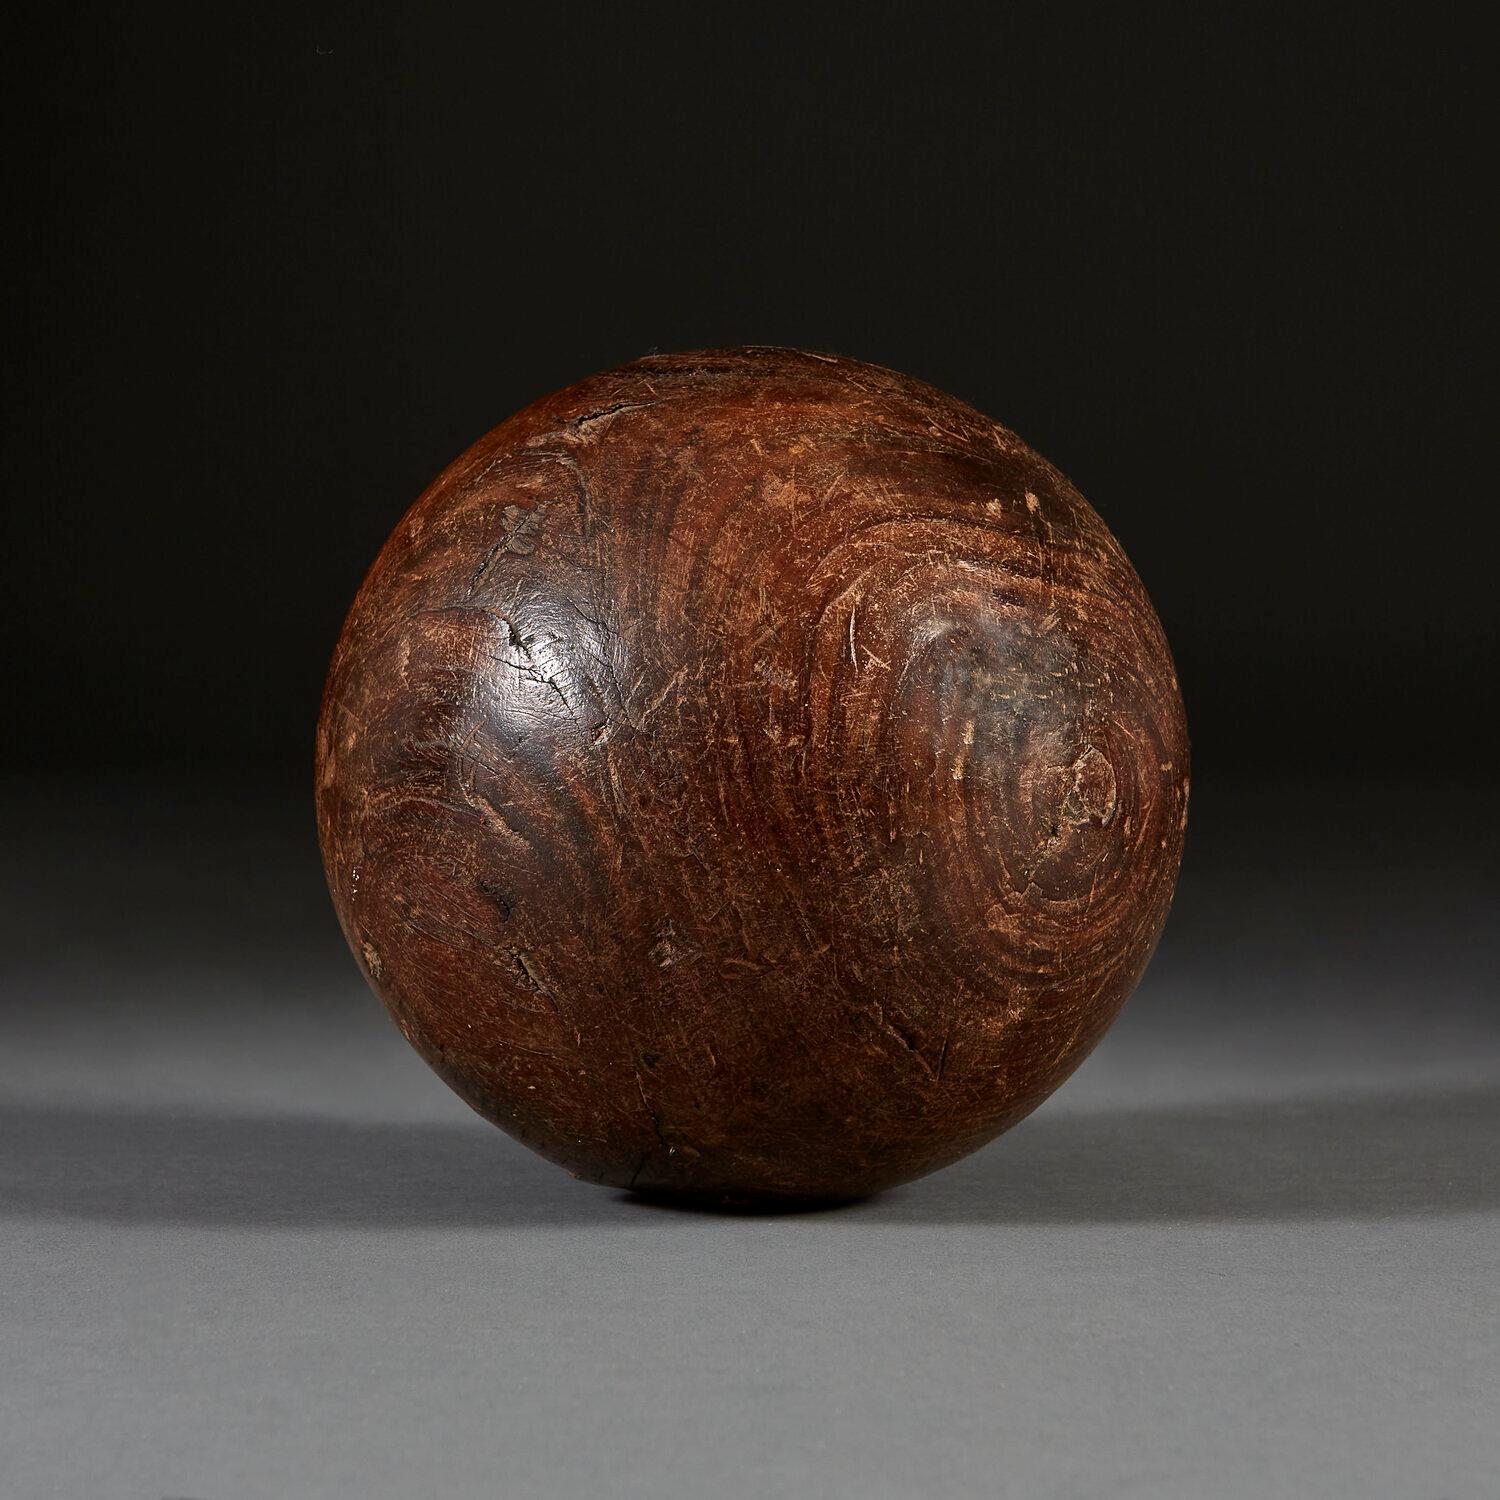 Eine Lignum-vitae-Kugel aus dem späten achtzehnten Jahrhundert in großem Maßstab.

Lignum vitae wurde von Dame Barbara Hepworth bevorzugt, und eine Hepworth-Kugelskulptur aus diesem Material wurde kürzlich für 650.000 Pfund verkauft.